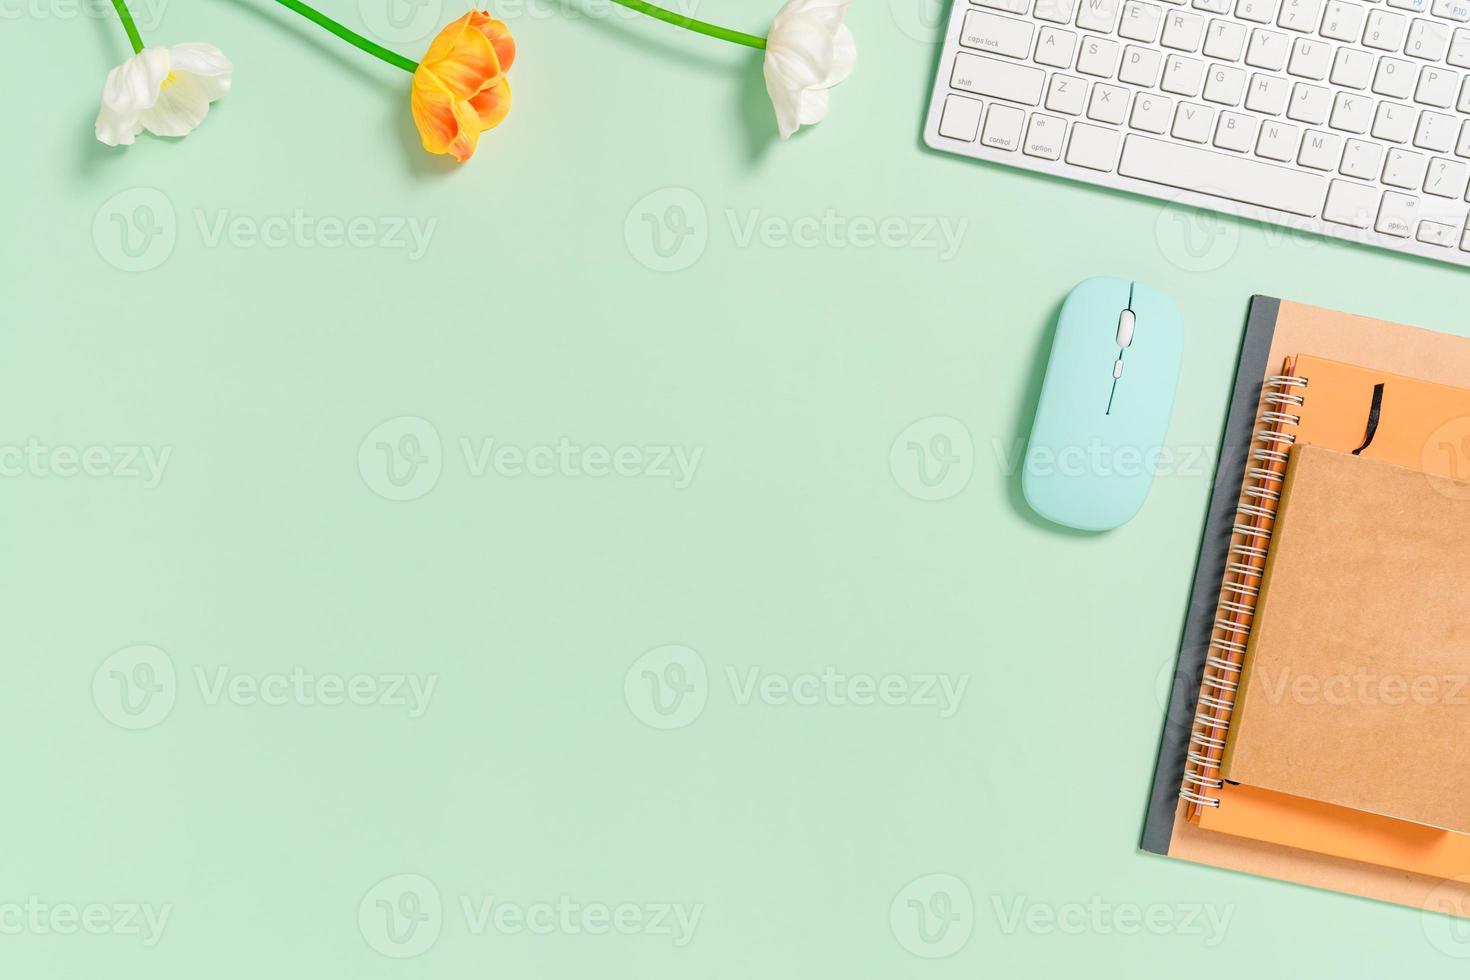 minimale werkruimte - creatieve platliggende foto van werkruimtebureau. bovenaanzicht bureau met toetsenbord, muis en notebook op pastel groene kleur achtergrond. bovenaanzicht met kopieerruimte, platliggende fotografie.